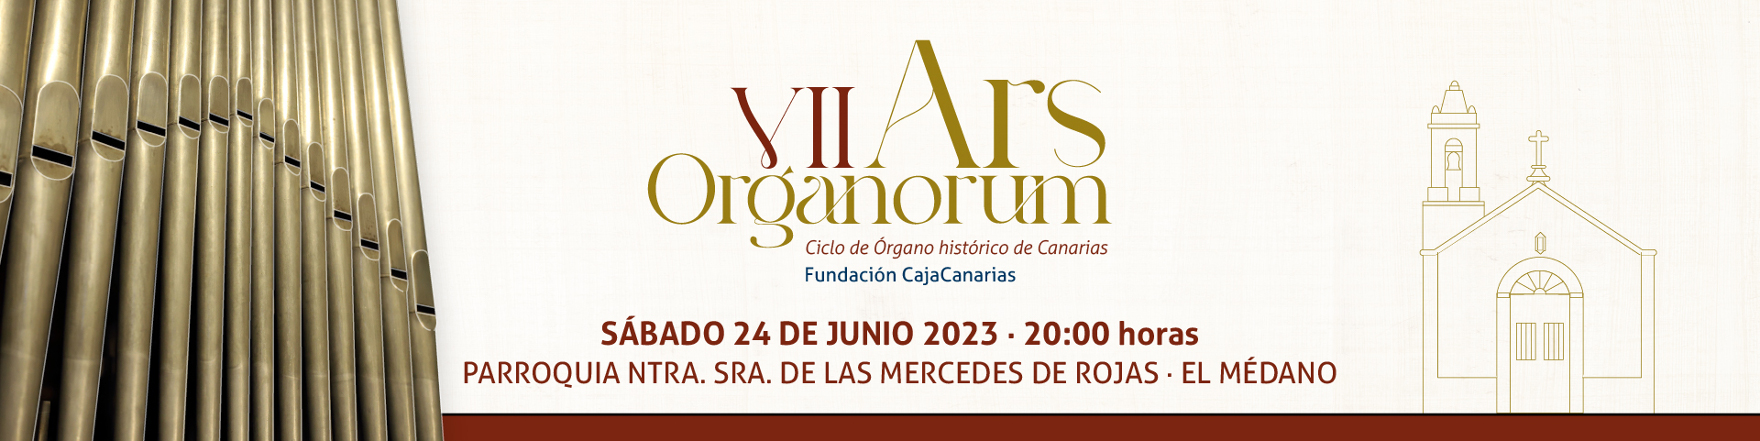 Conciertos - Ars Organorum - El Médano - 24 de junio